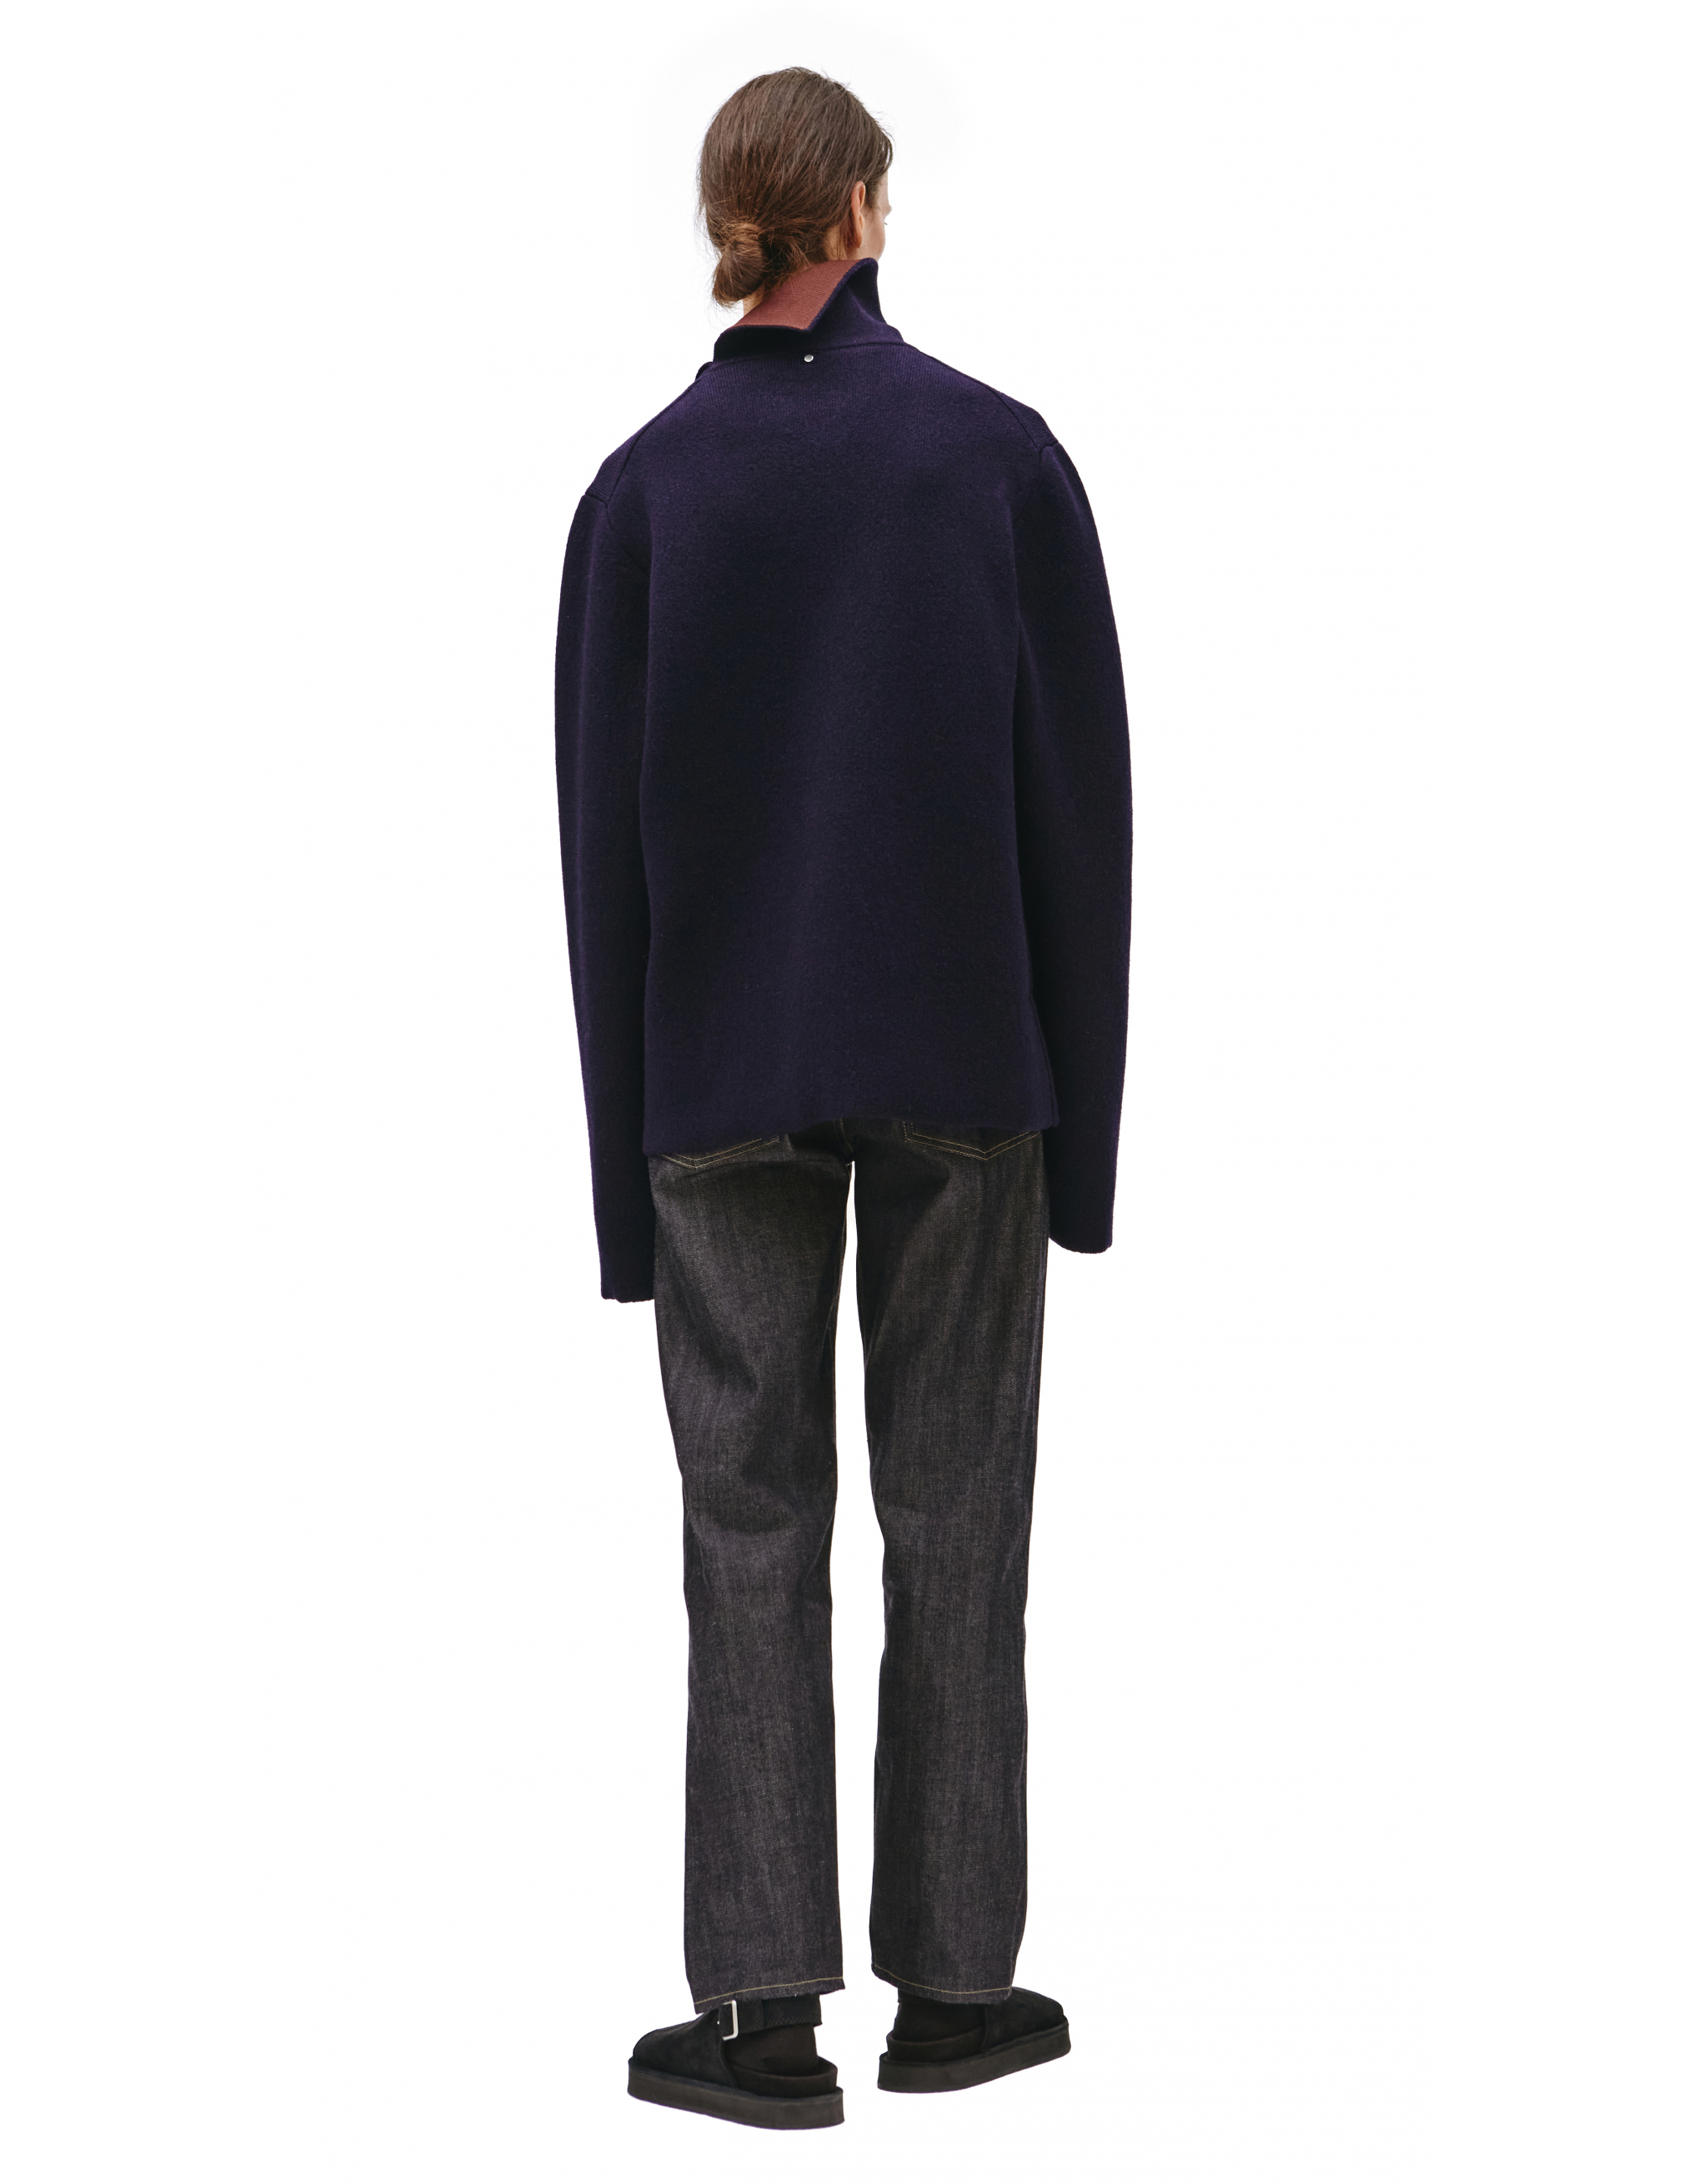 Темно-синий свитер с контрастным воротником OAMT751167/OTY20002A/401 Фото 3